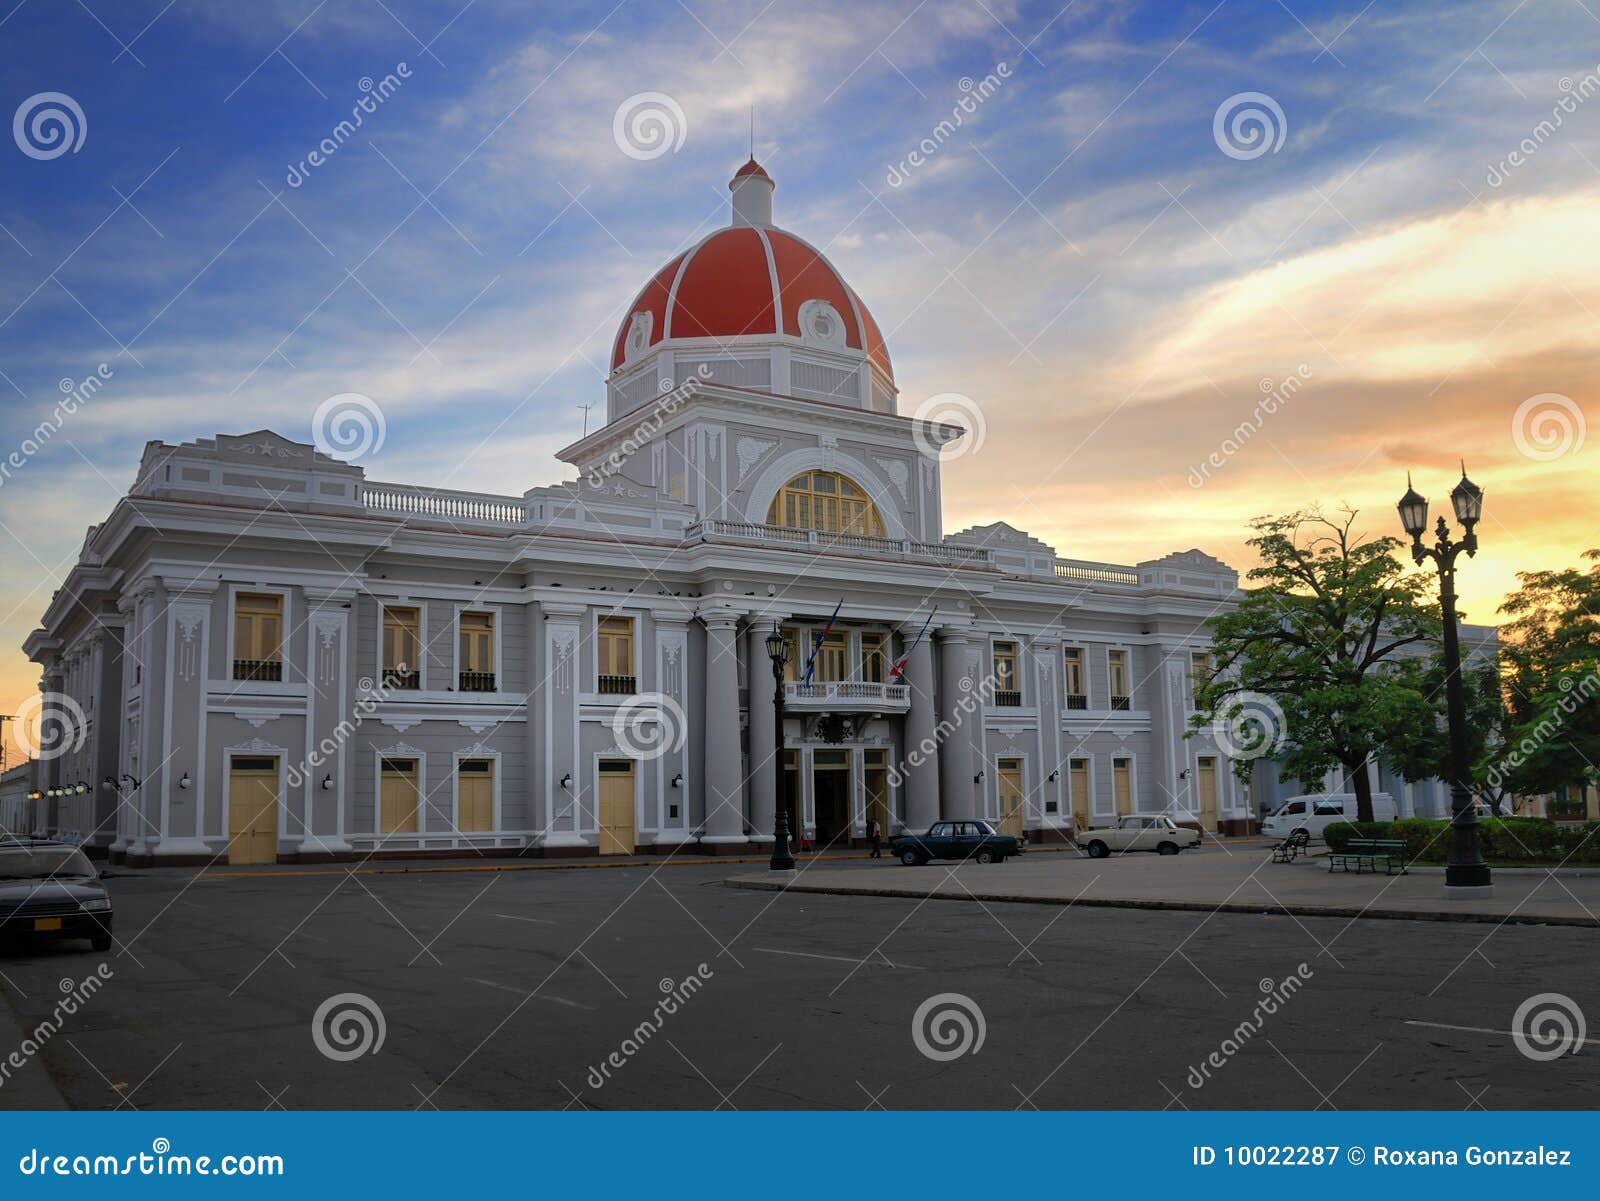 cienfuegos city hall, cuba